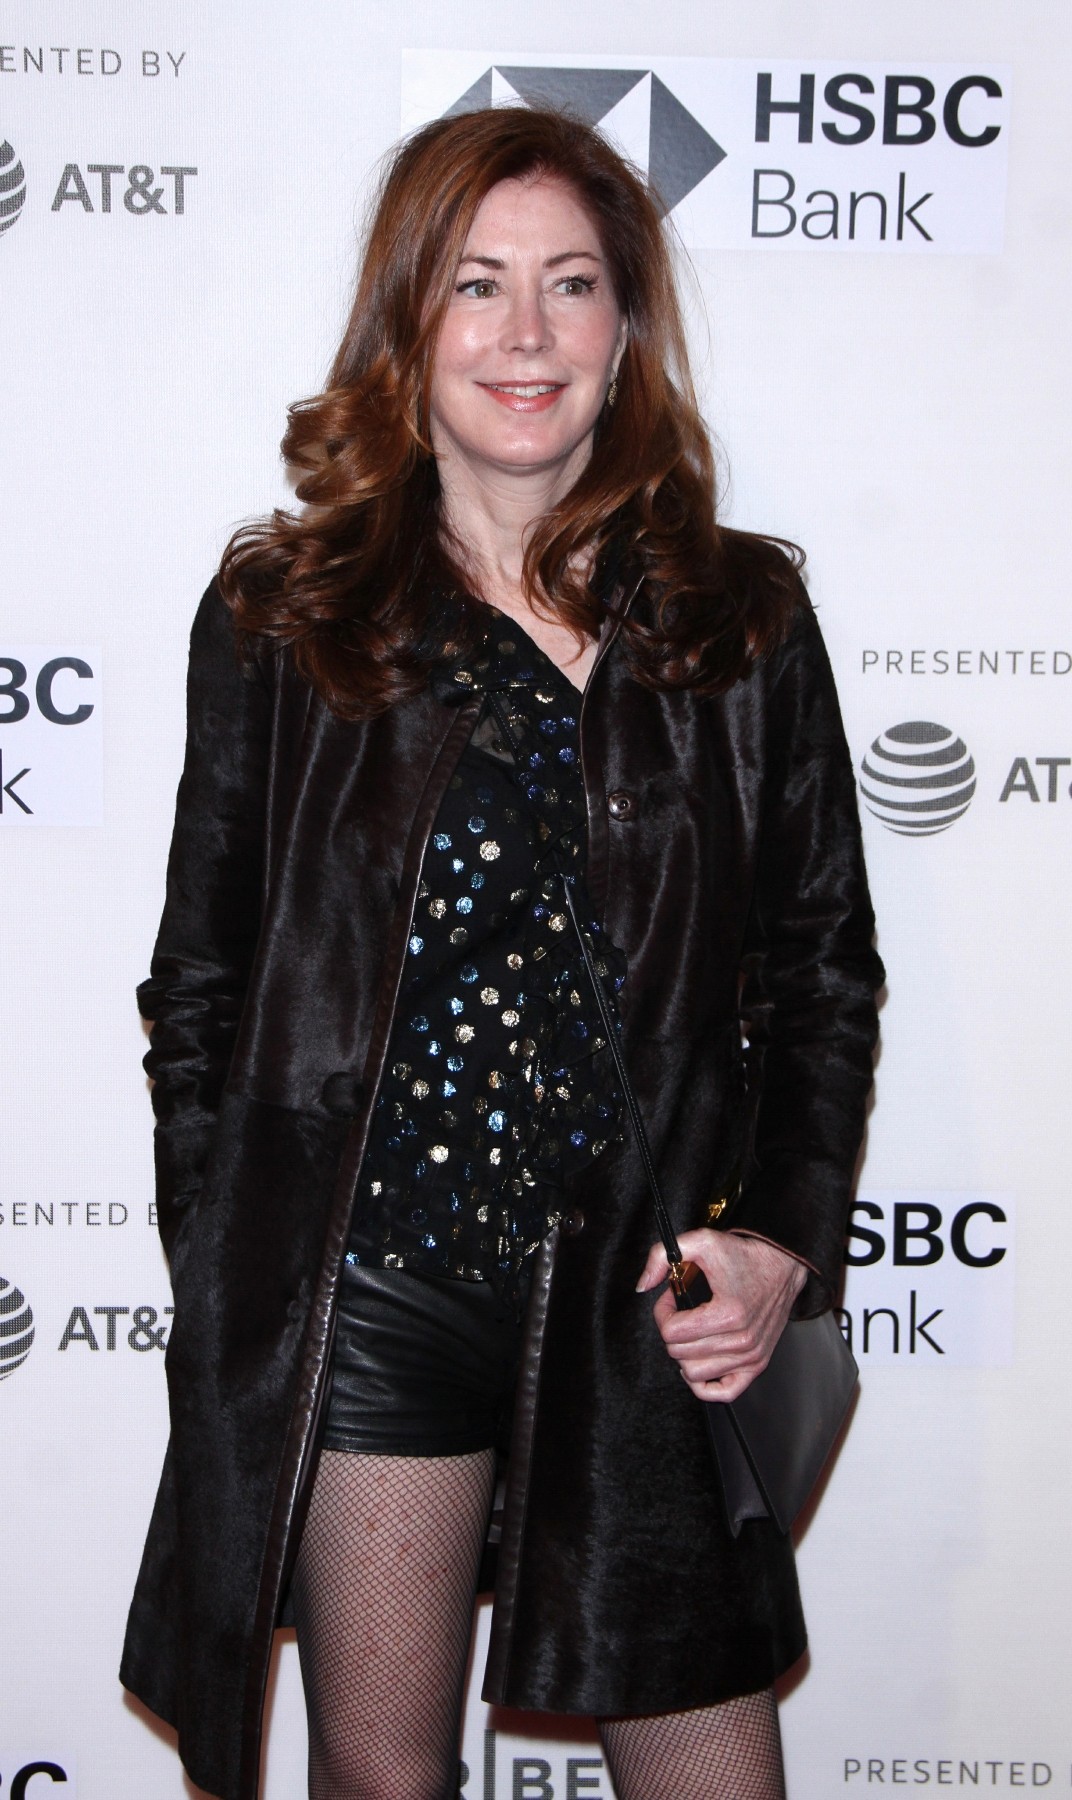 Dana Delany attends Tribeca Film Festival premiere